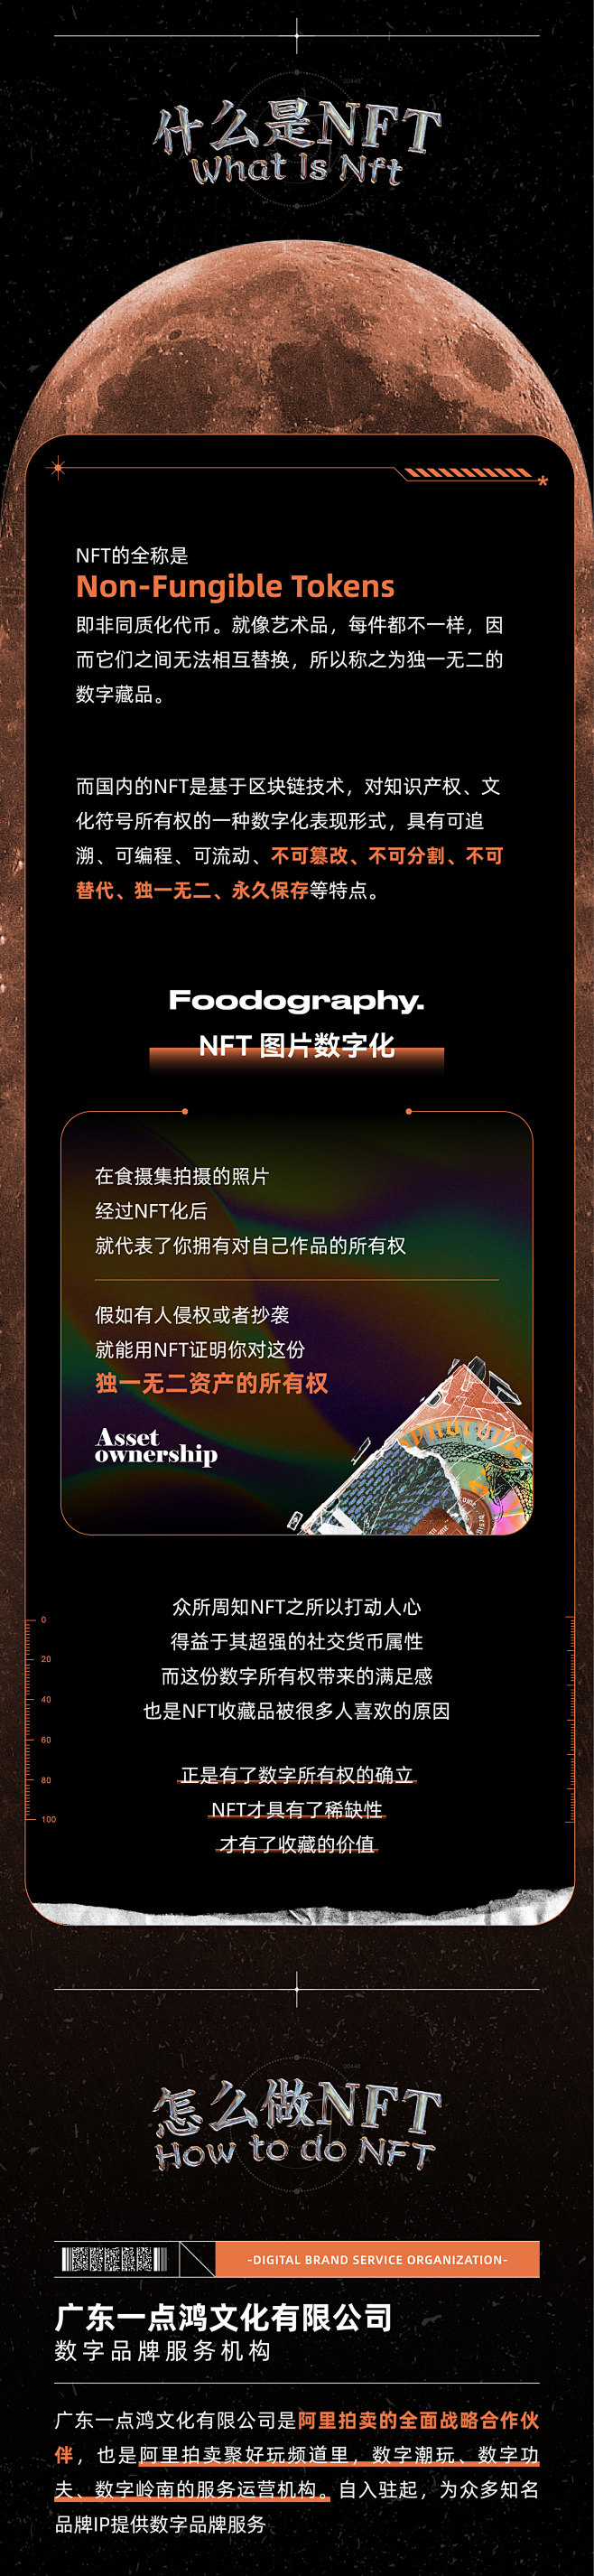 nft NFT艺术 产品摄影 品牌数字化...